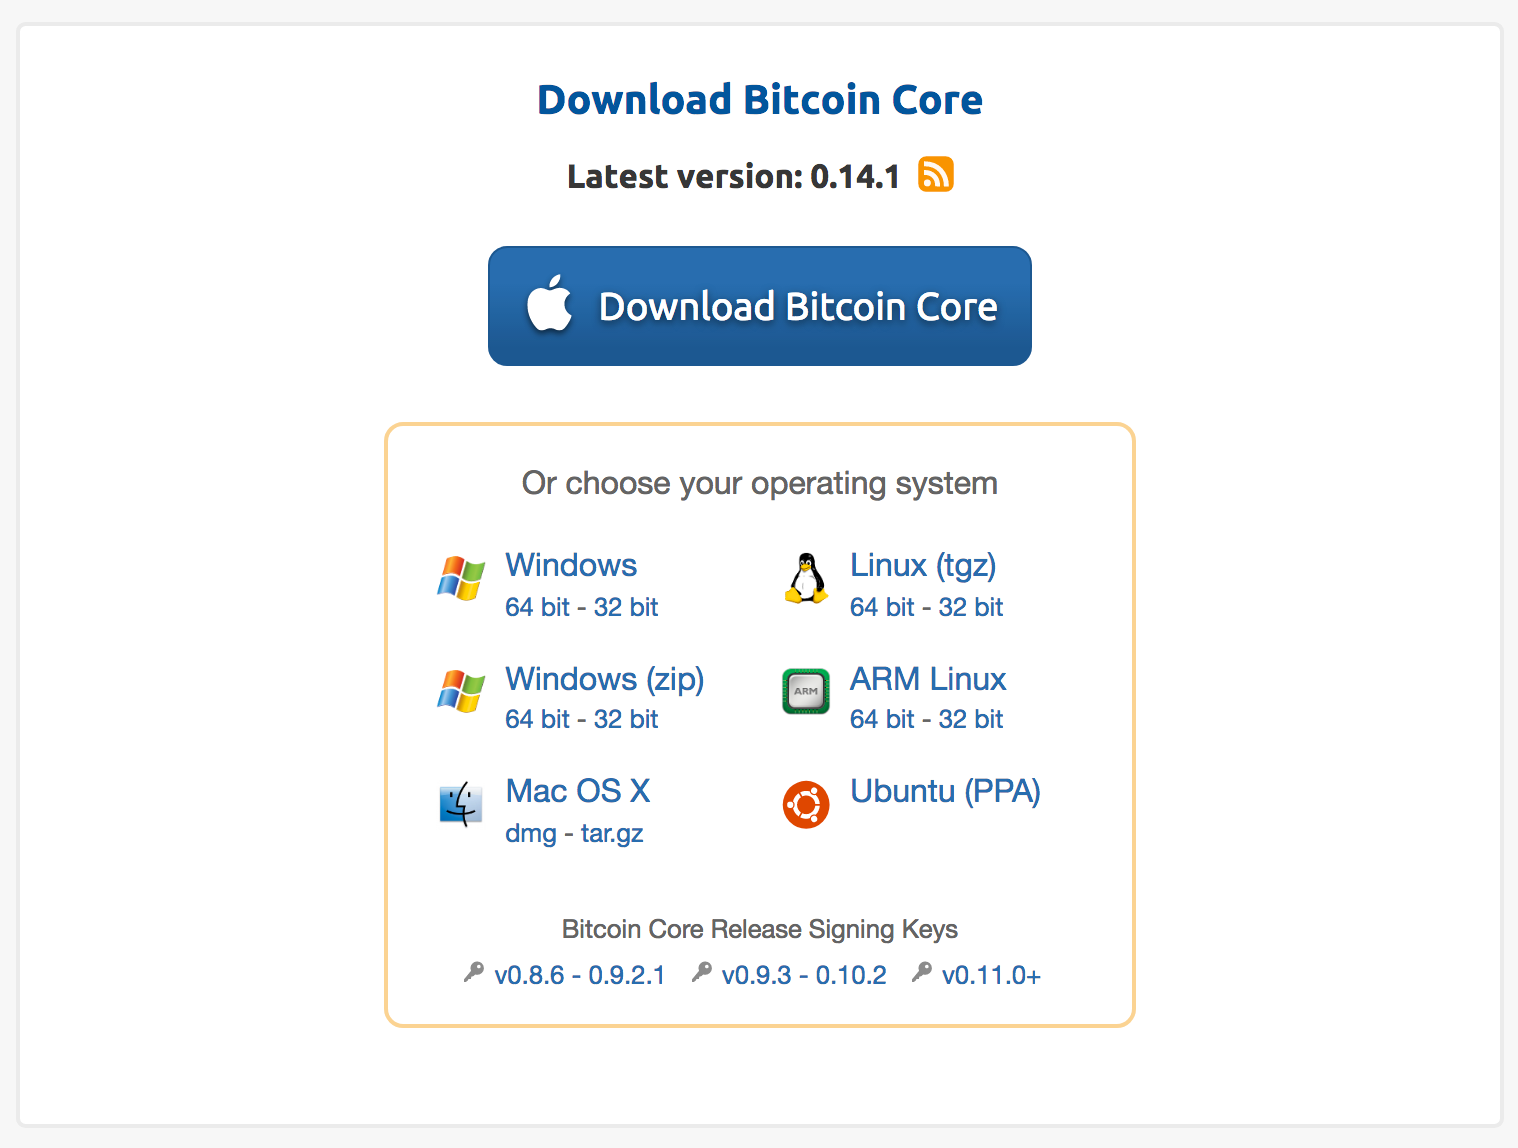 Bitcoin Core Version 0.14.1